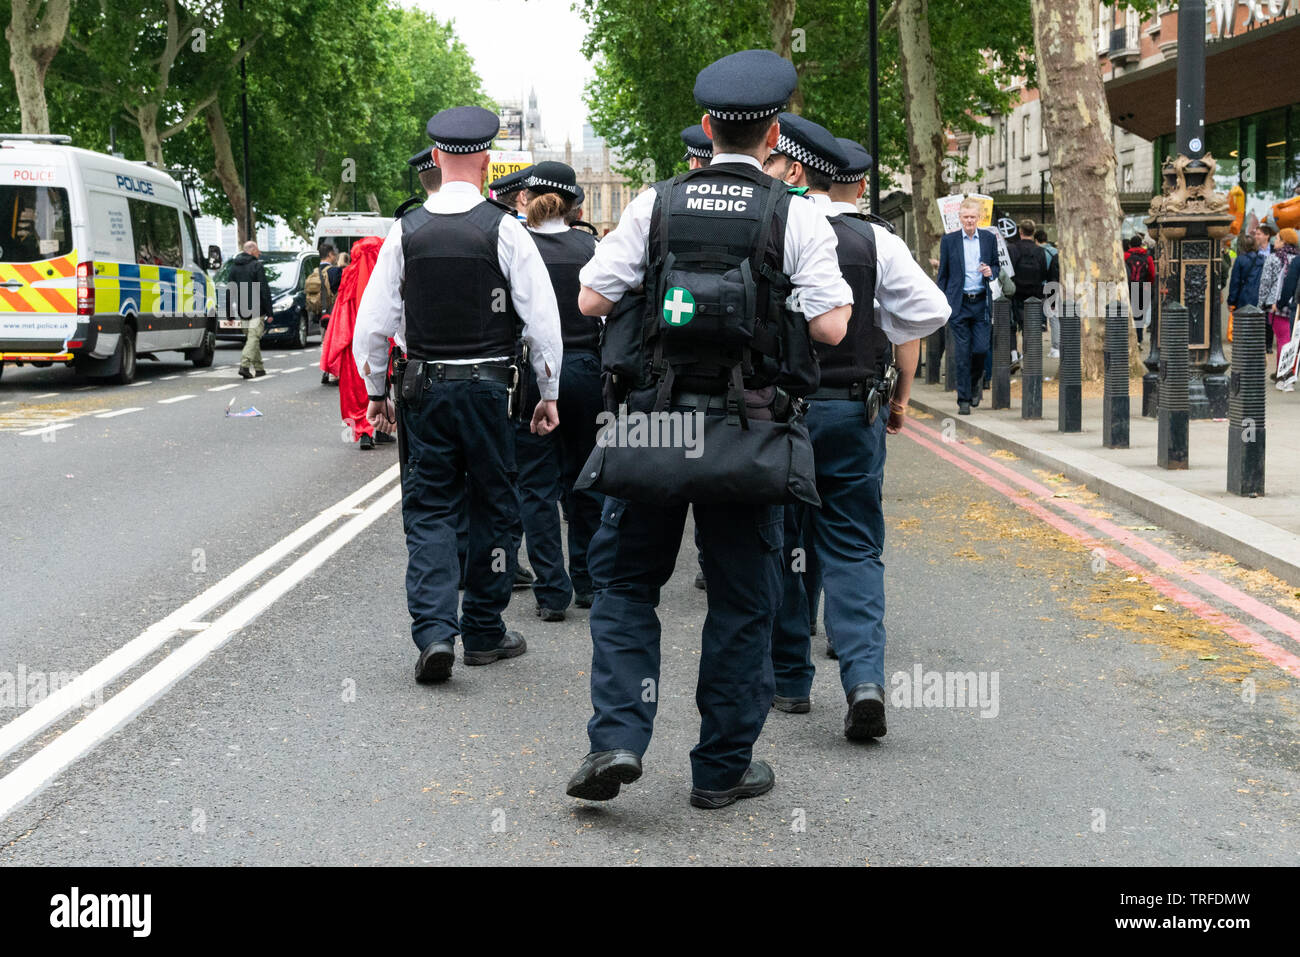 Il 4 giugno 2019. Londra, Regno Unito. Anti Trump nel rally di Westminster. Un gruppo di funzionari di polizia e forze di polizia medic seguire i manifestanti. Foto Stock